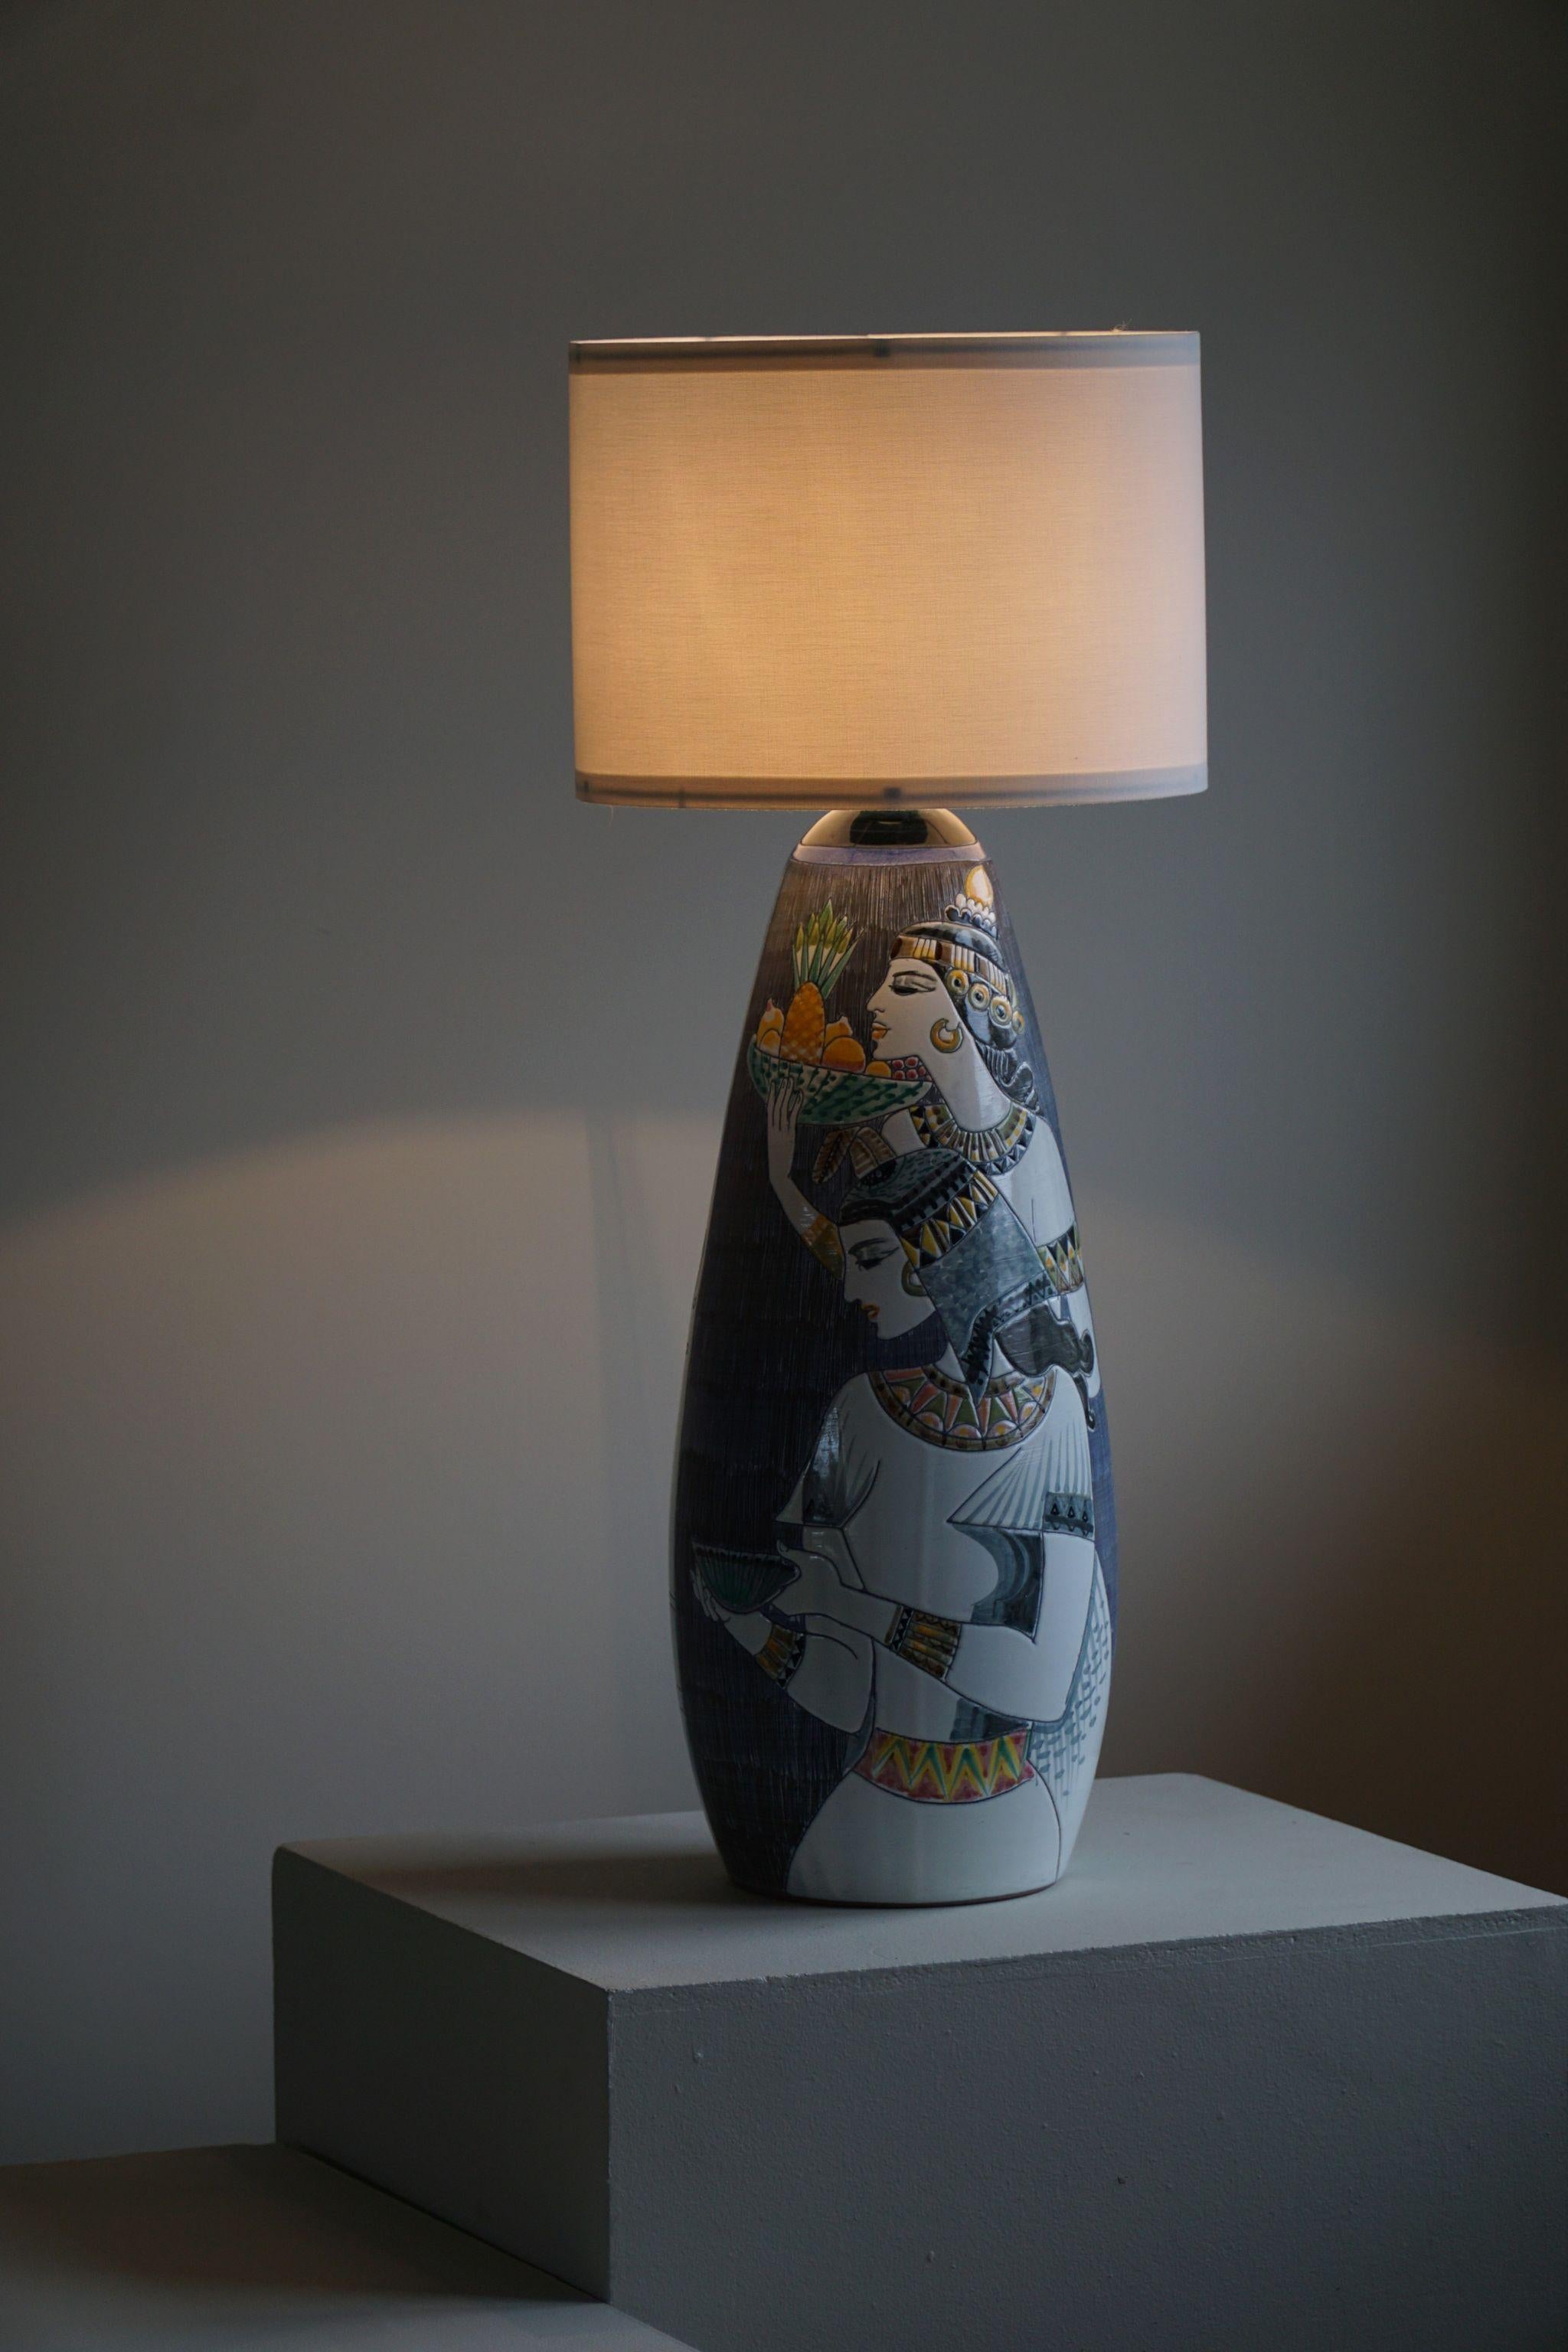 Beeindruckende große handverzierte Stehlampe aus Keramik. Reiche Details wie die beiden figurativen Menschen in Sgraffito-Technik realisiert.
Entworfen von Marian Zawadzki, Modell 